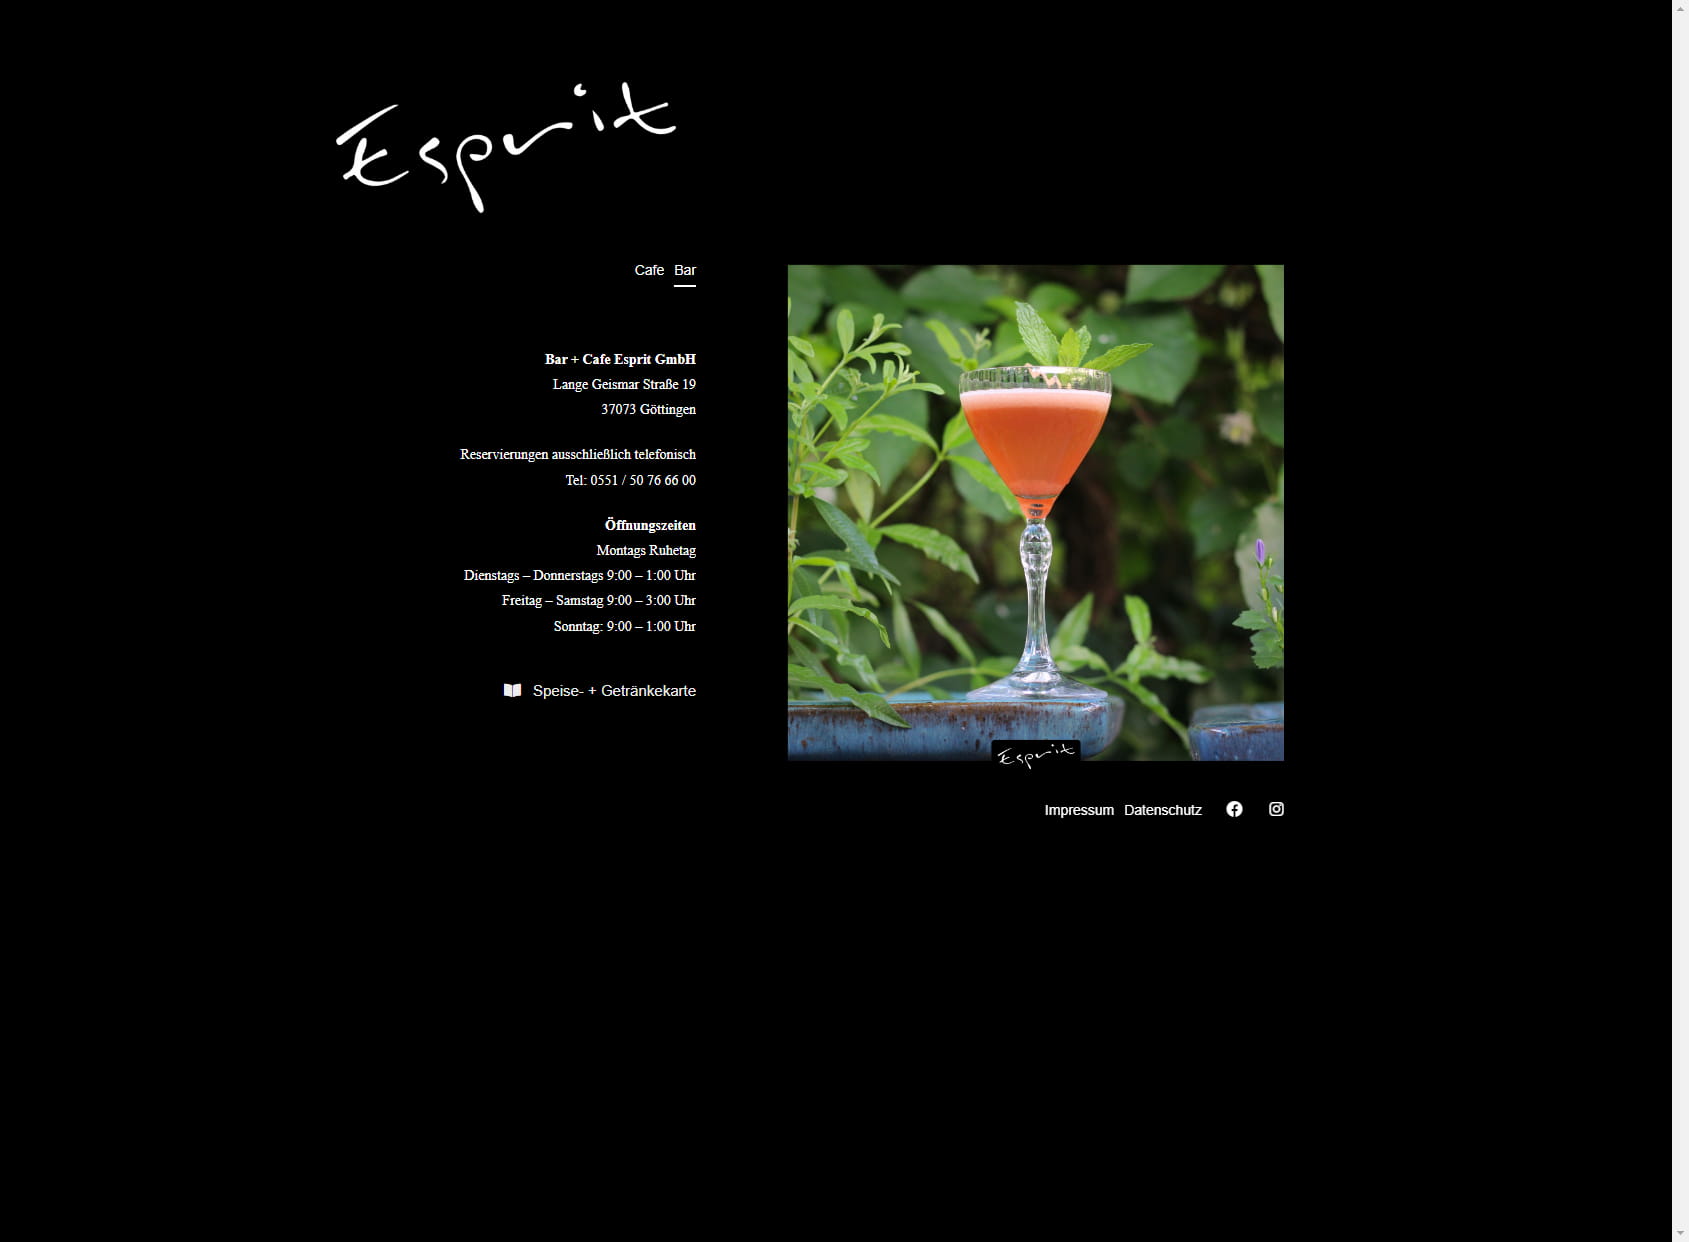 Bar + Cafe Esprit owner Robert Vogel e. K.